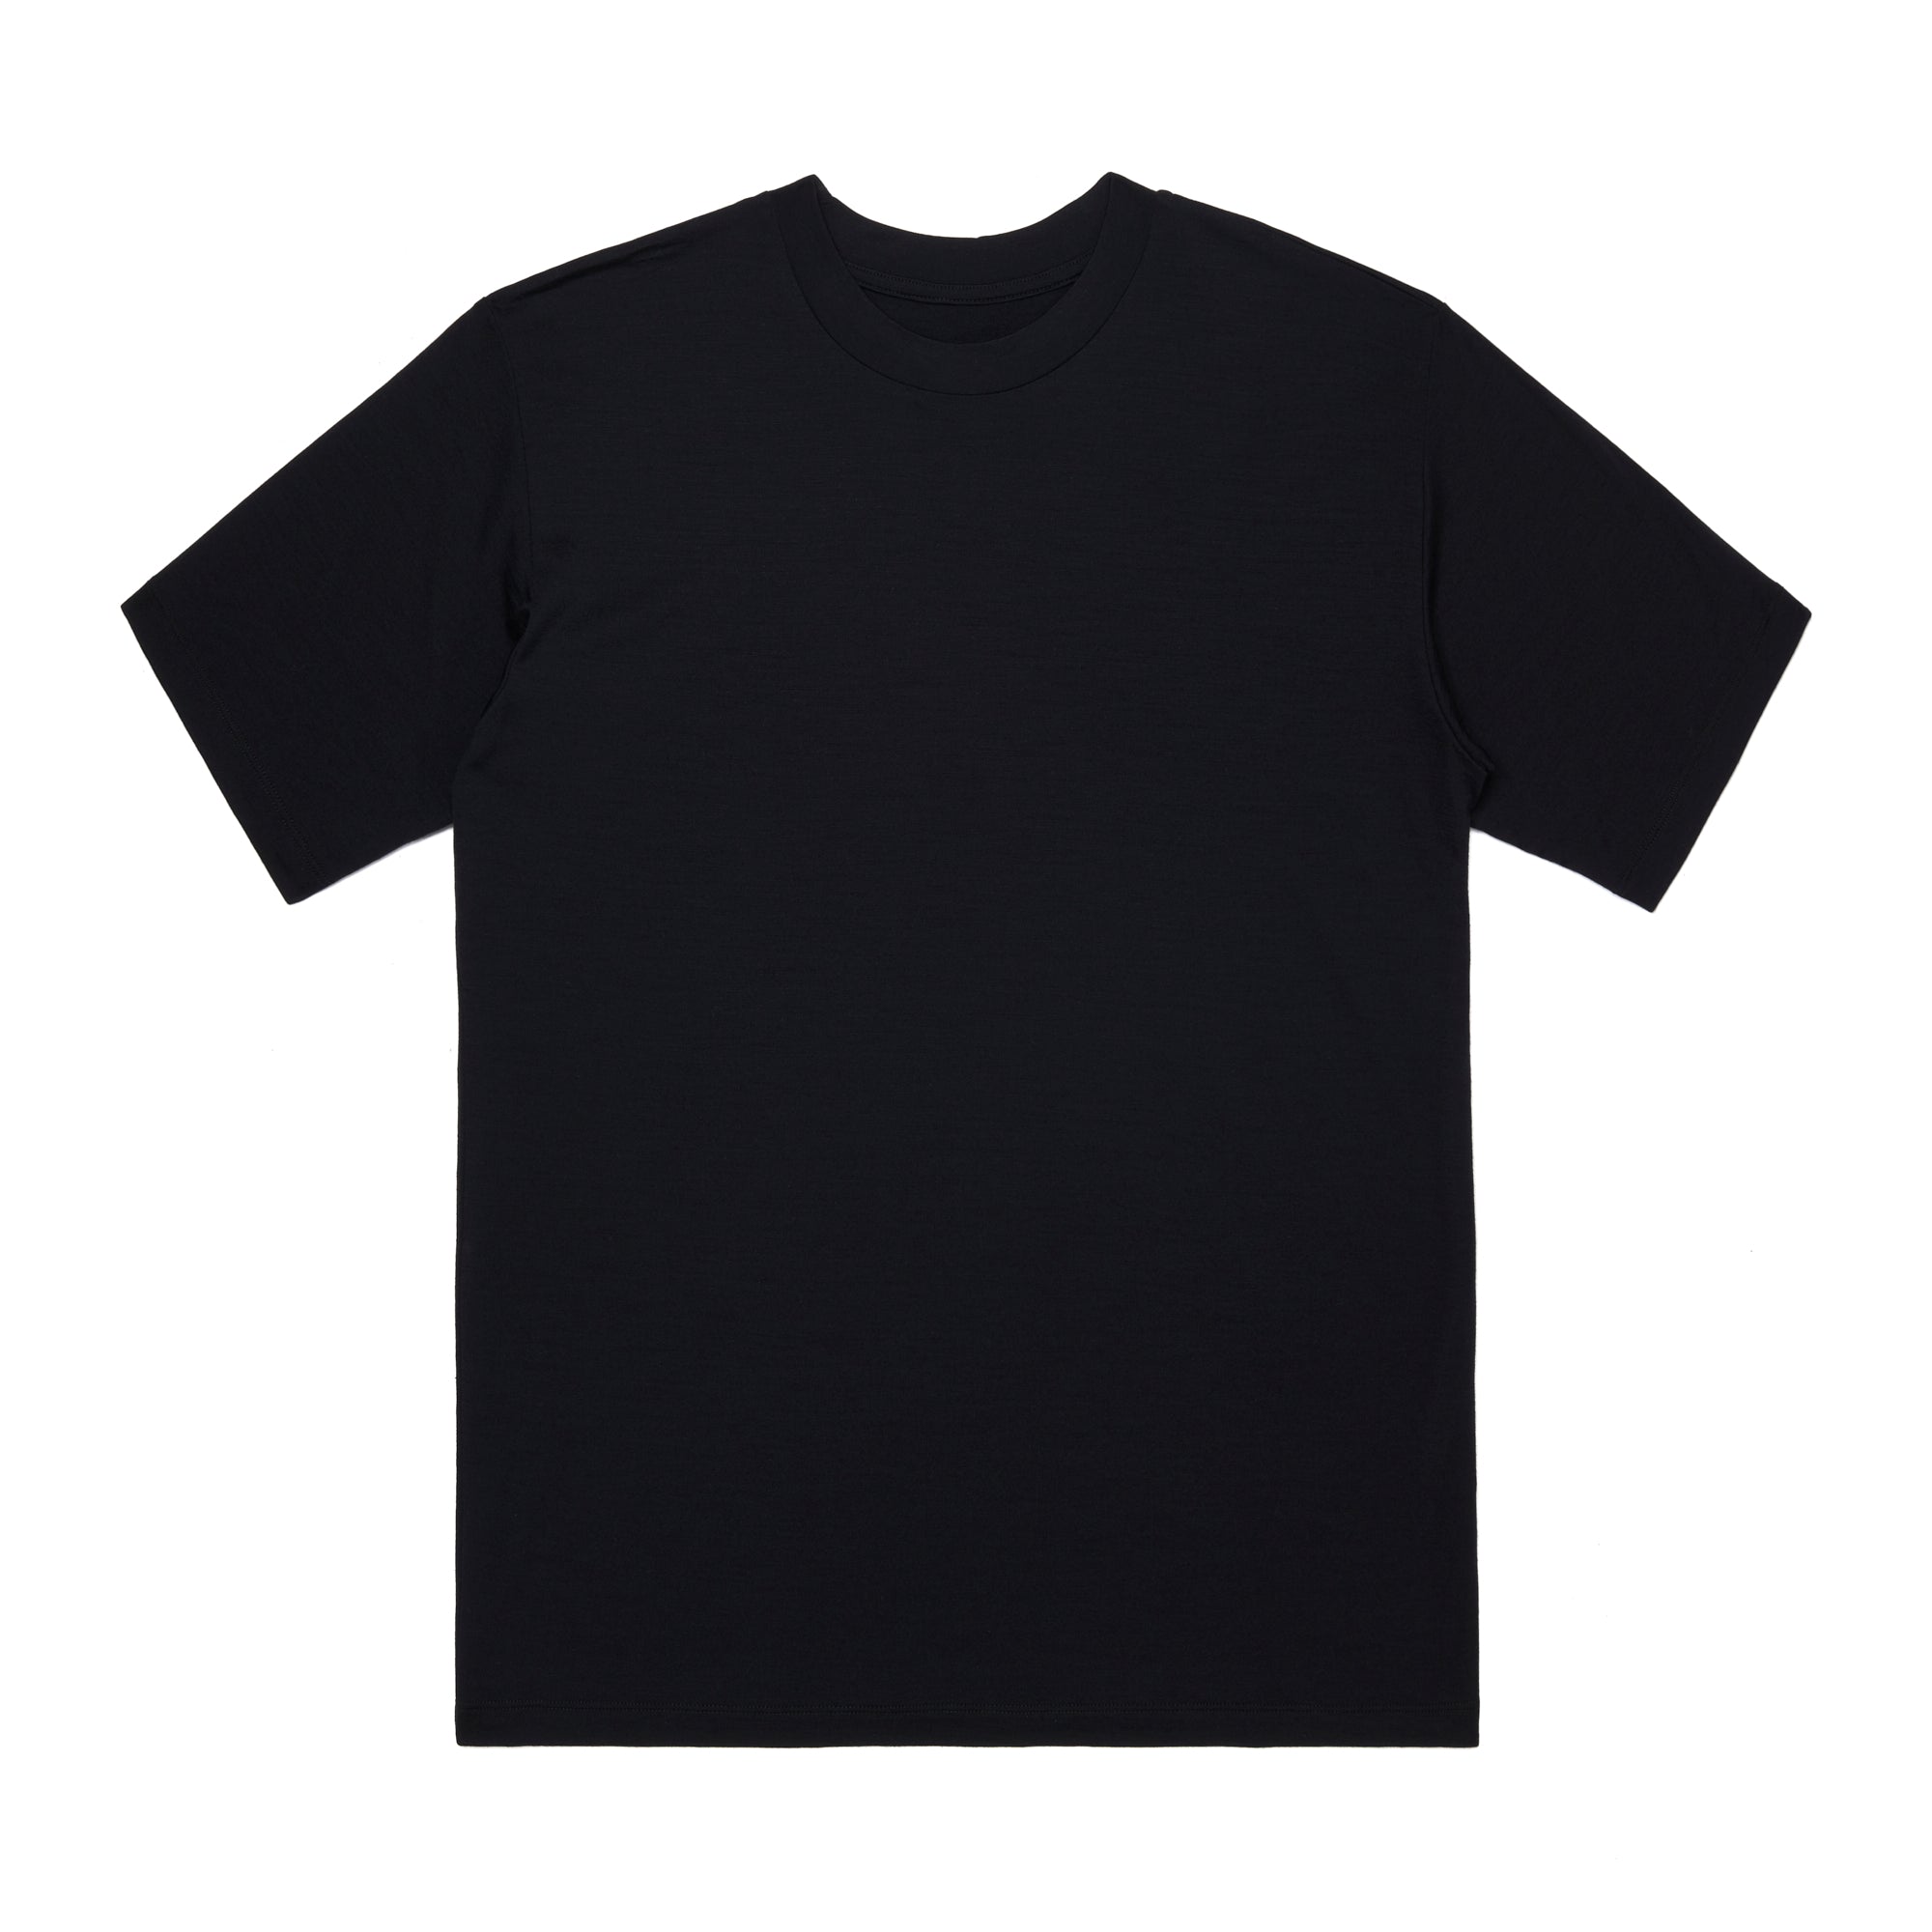 Daydry Merino Cut Zero T-shirt